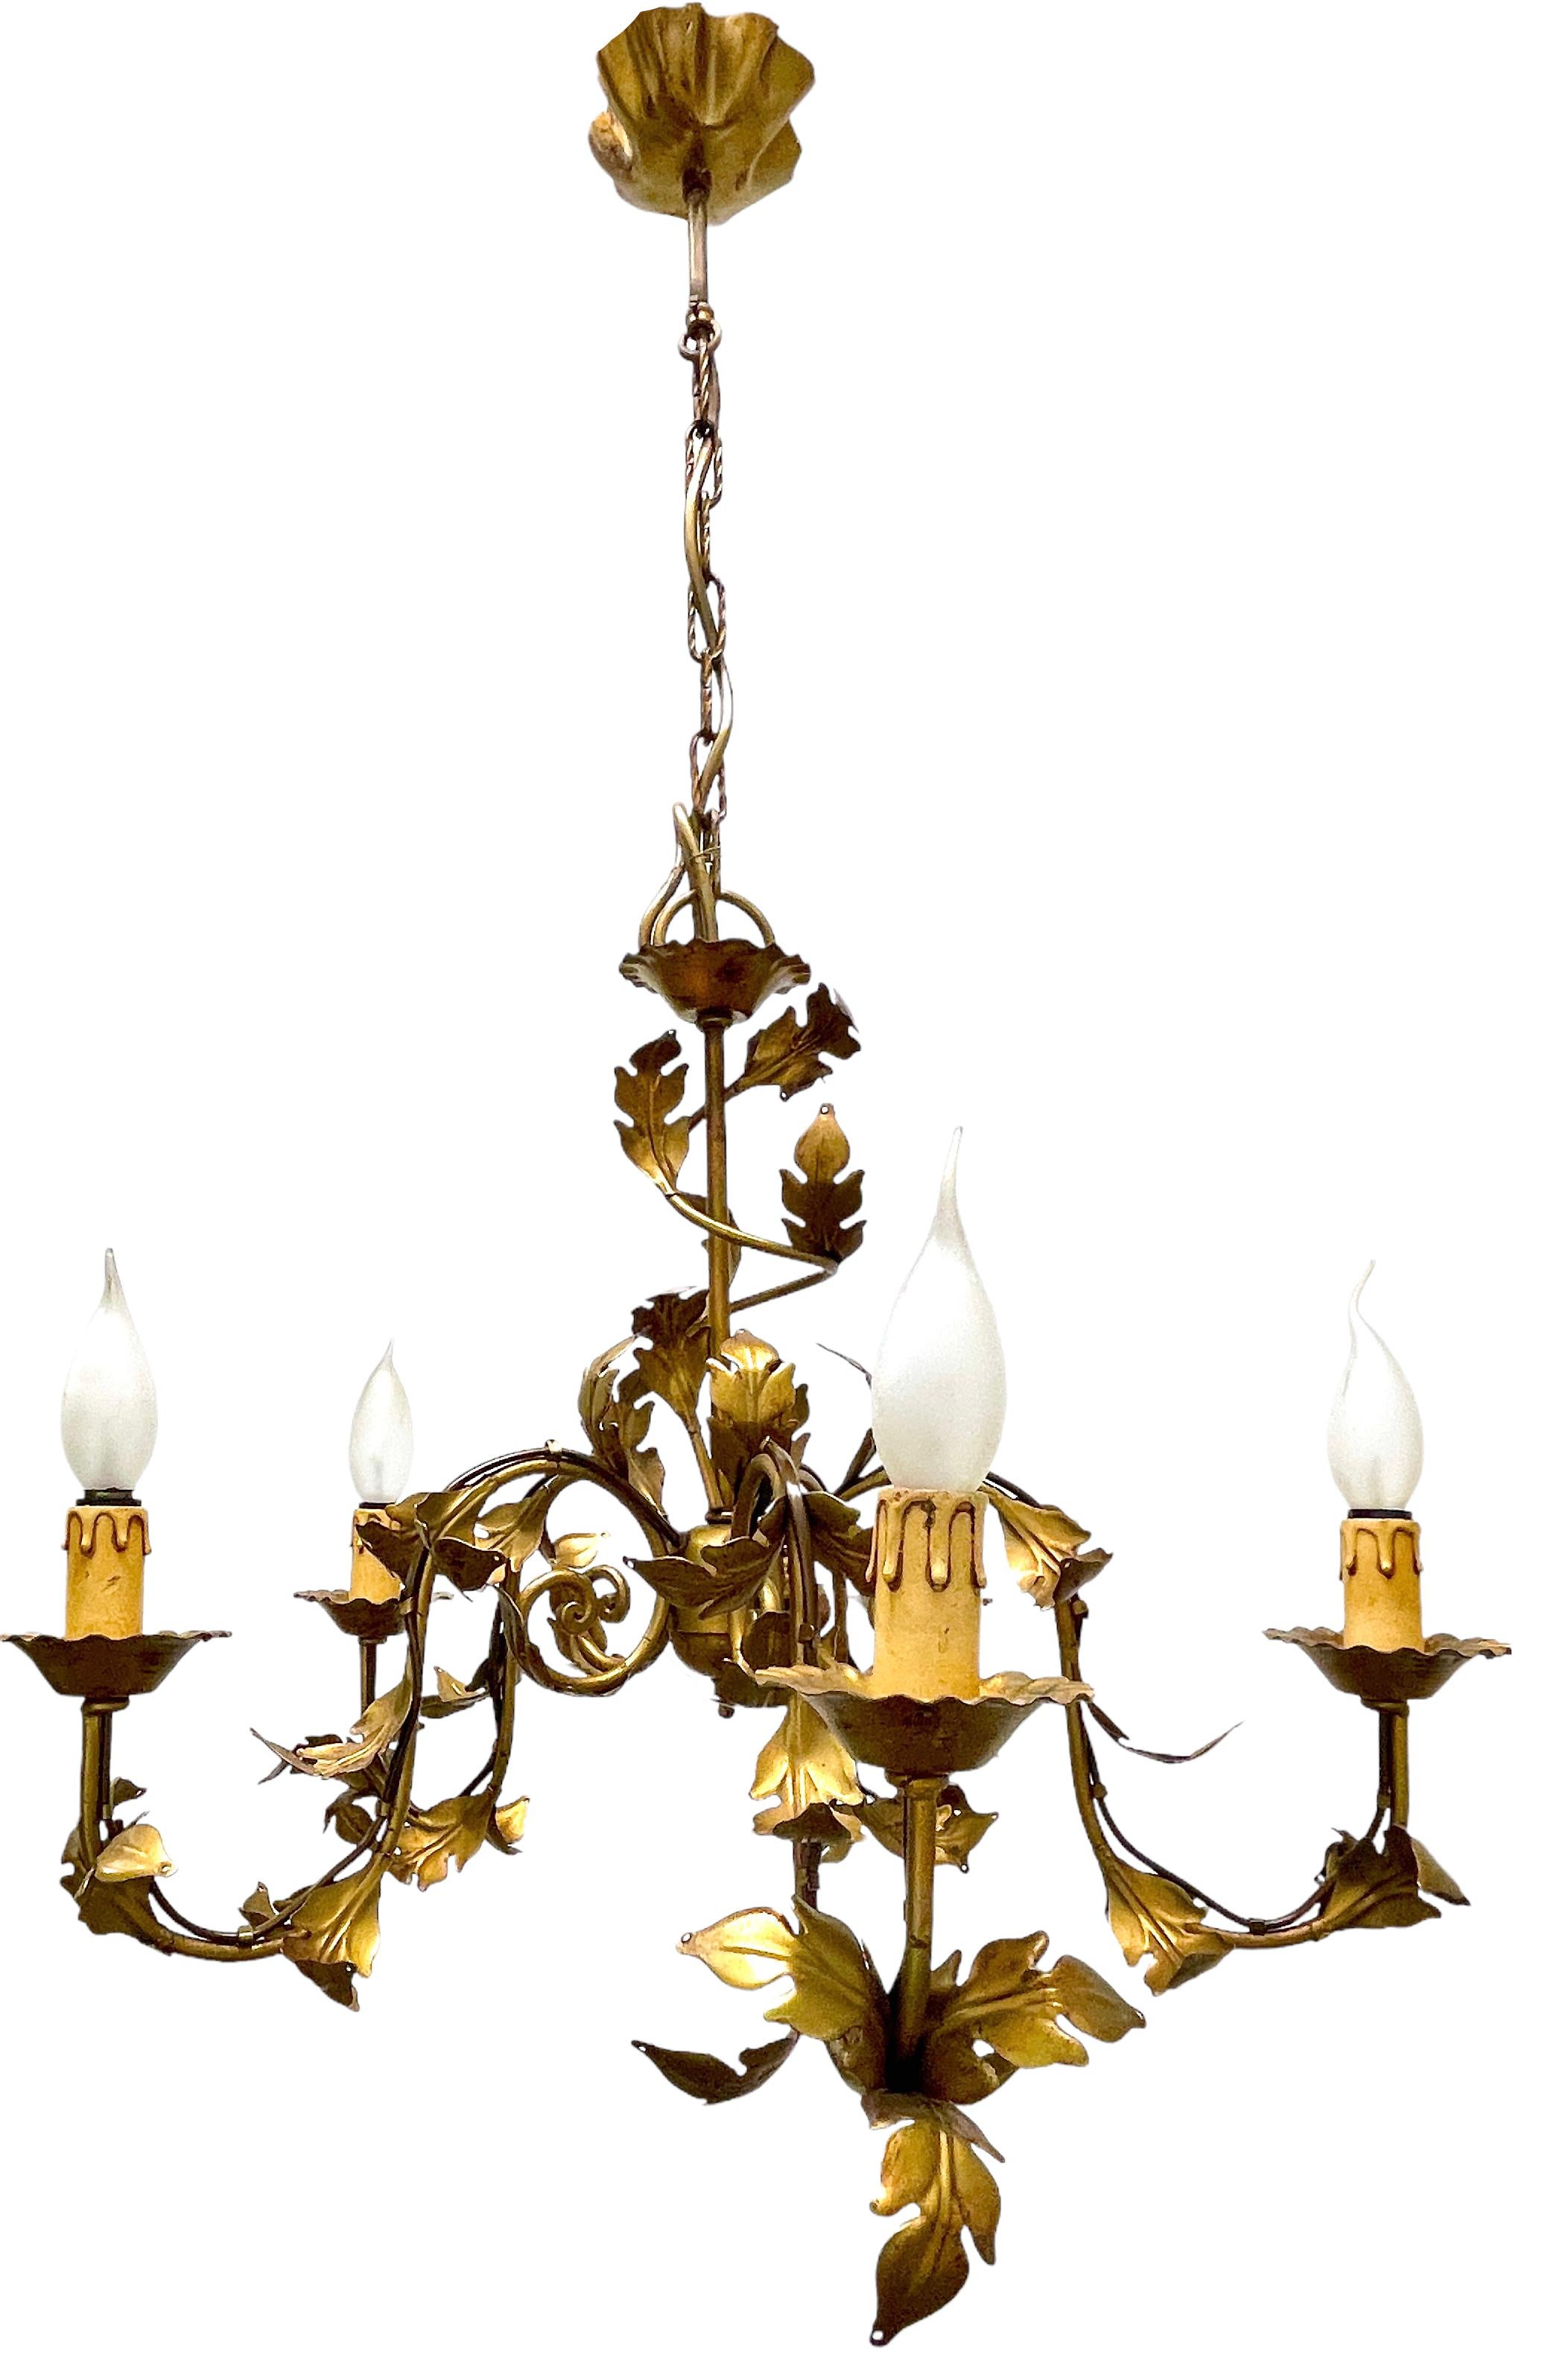 Hollywood-Regency-Kronleuchter aus vergoldetem Zinn aus der Mitte des Jahrhunderts, die Leuchte benötigt fünf europäische E14-Kandelaberlampen, jede Glühbirne bis zu 40 Watt. Diese Leuchte hat eine schöne Patina und verleiht jedem Raum ein